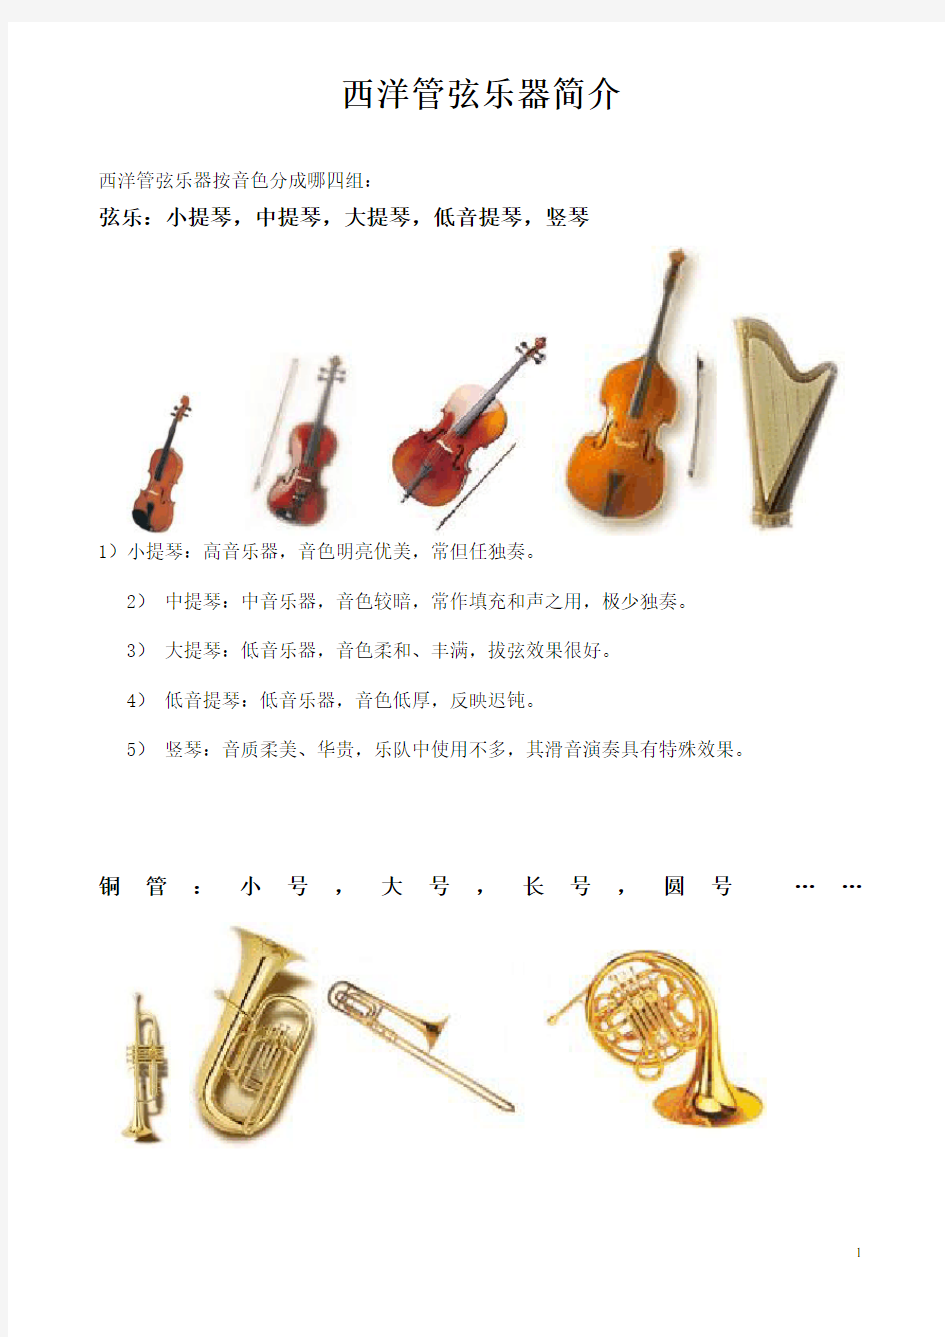 西洋管弦乐器介绍